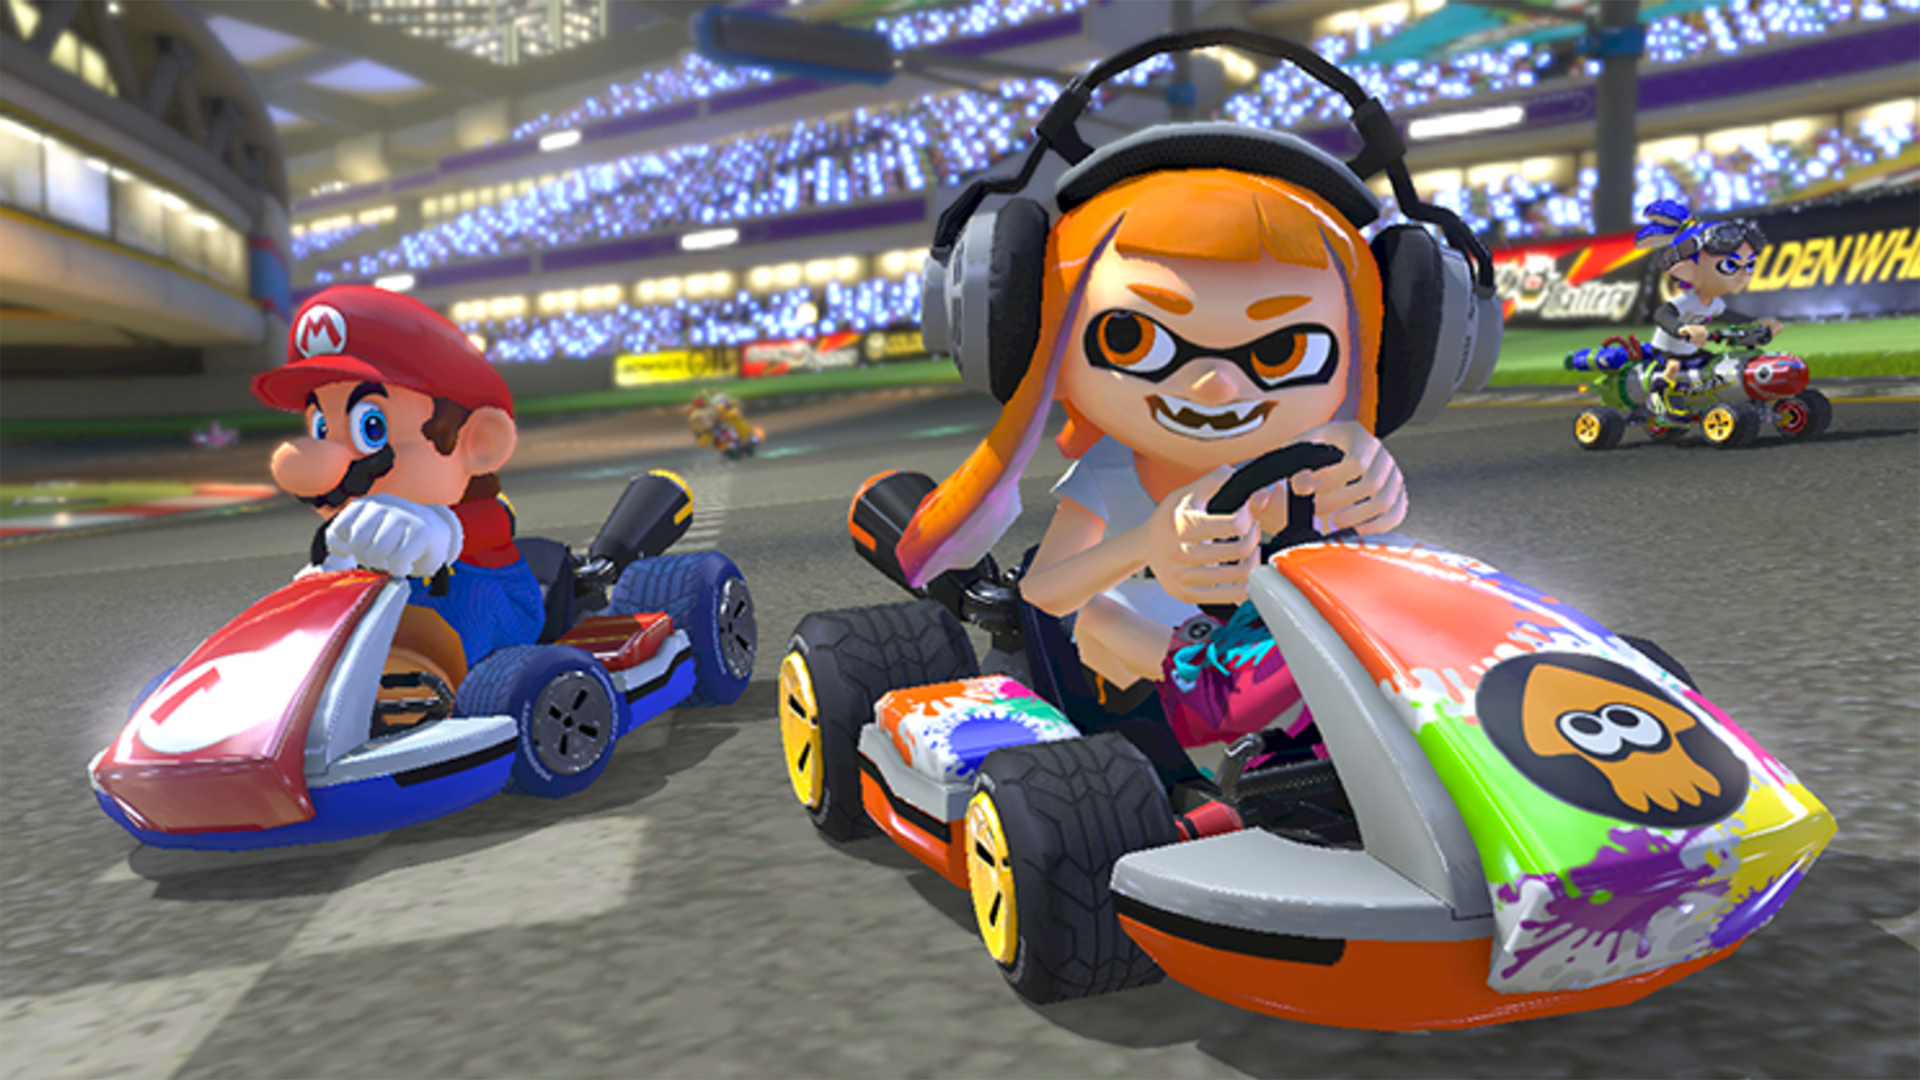 Image for Mario Kart 8 Deluxe/Splatoon 2 Nintendo Switch First Look